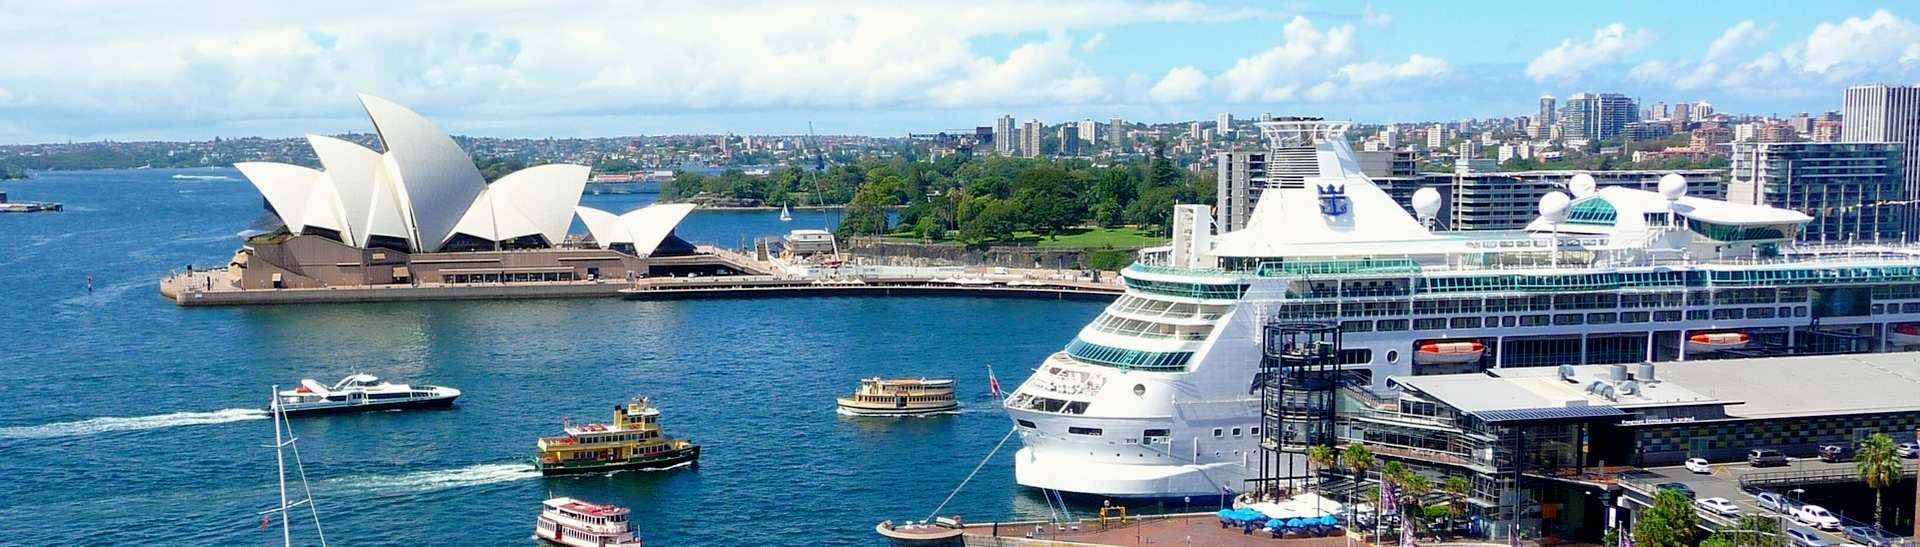 Main harbour in Sydney